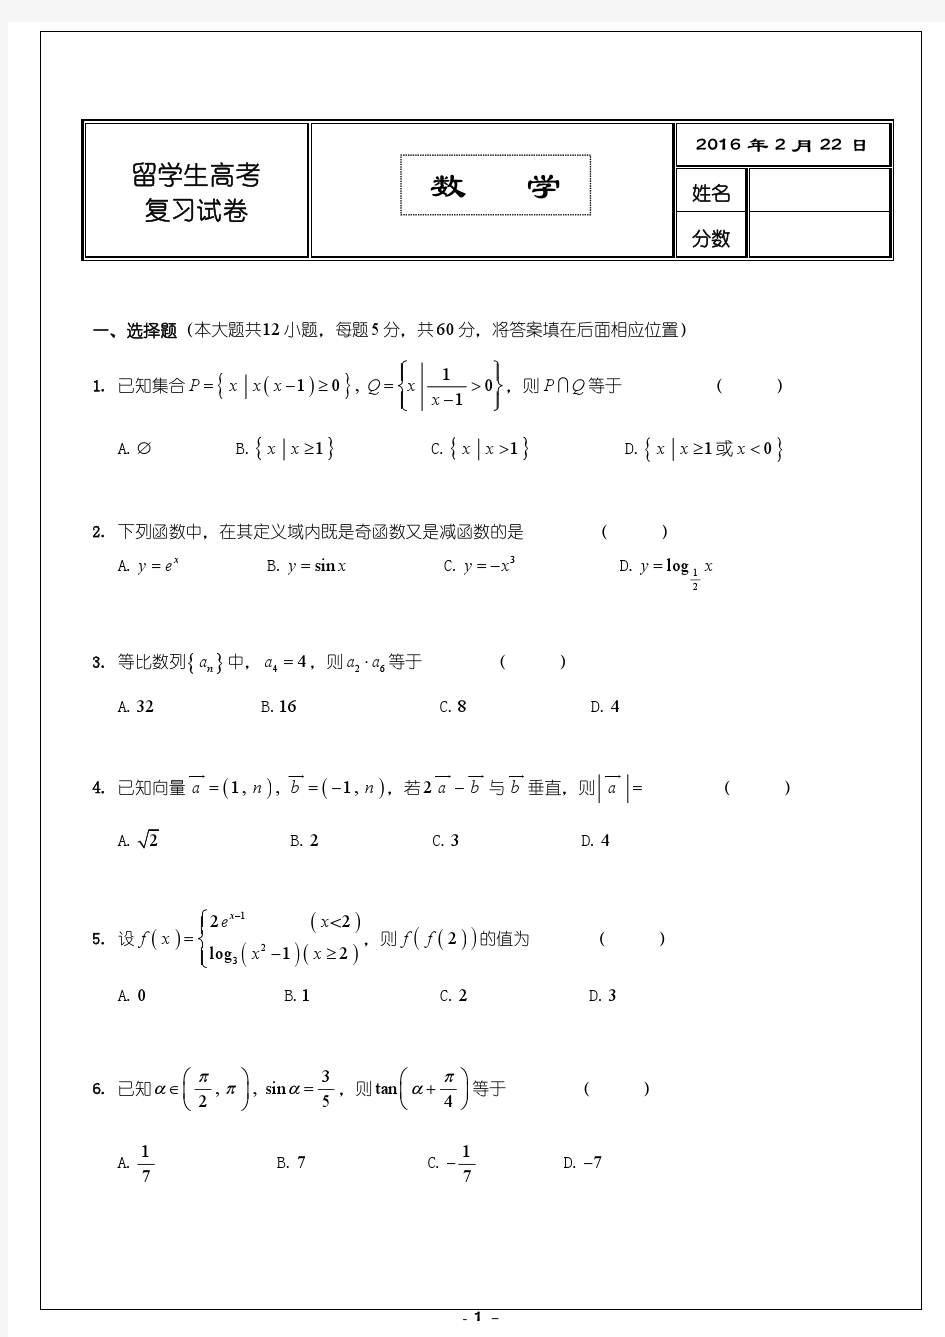 留学生参加北大清华入学考试数学复习试卷-2